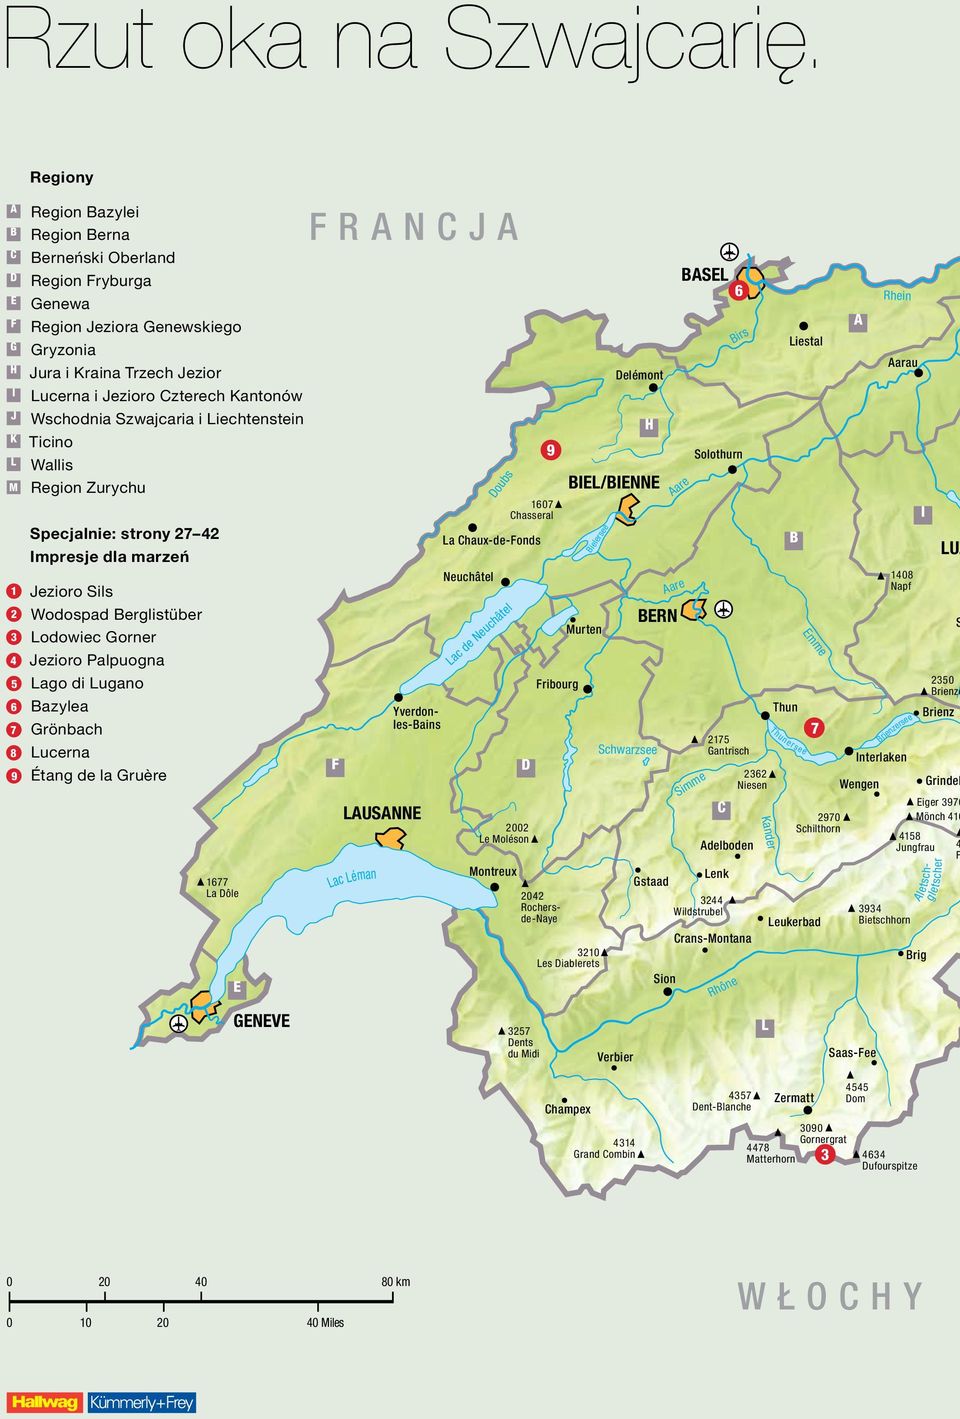 Jezioro Czterech Kantonów Wschodnia Szwajcaria i Liechtenstein Ticino Wallis Region Zurychu Specjalnie: strony 27 42 Impresje dla marzeń Jezioro Sils Wodospad Berglistüber Lodowiec Gorner Jezioro